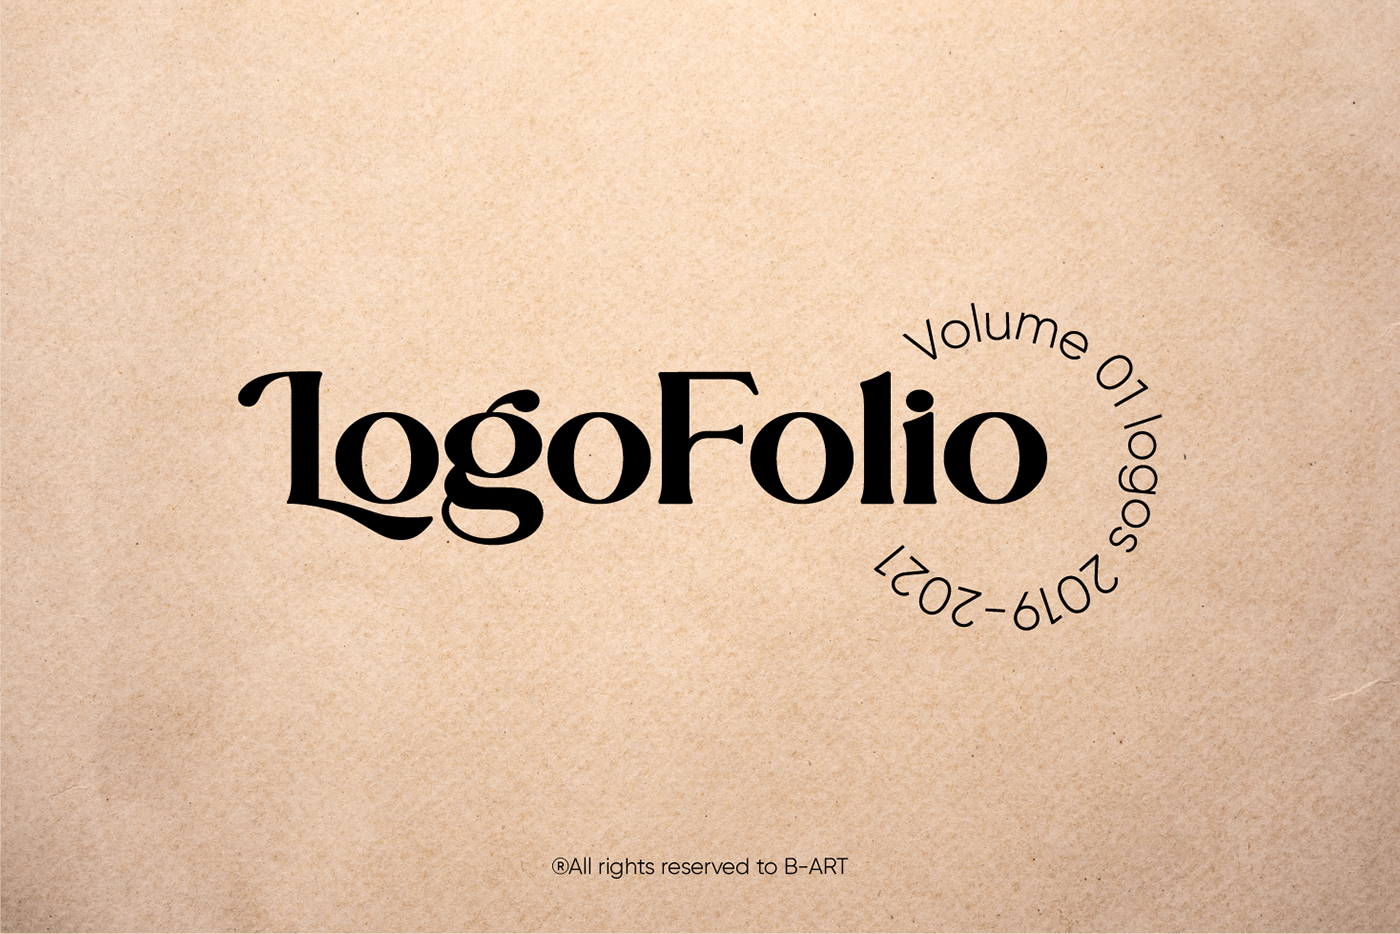 brand brand identity branding  identity Logo Design logofolio logos Logotype typography   visual identity